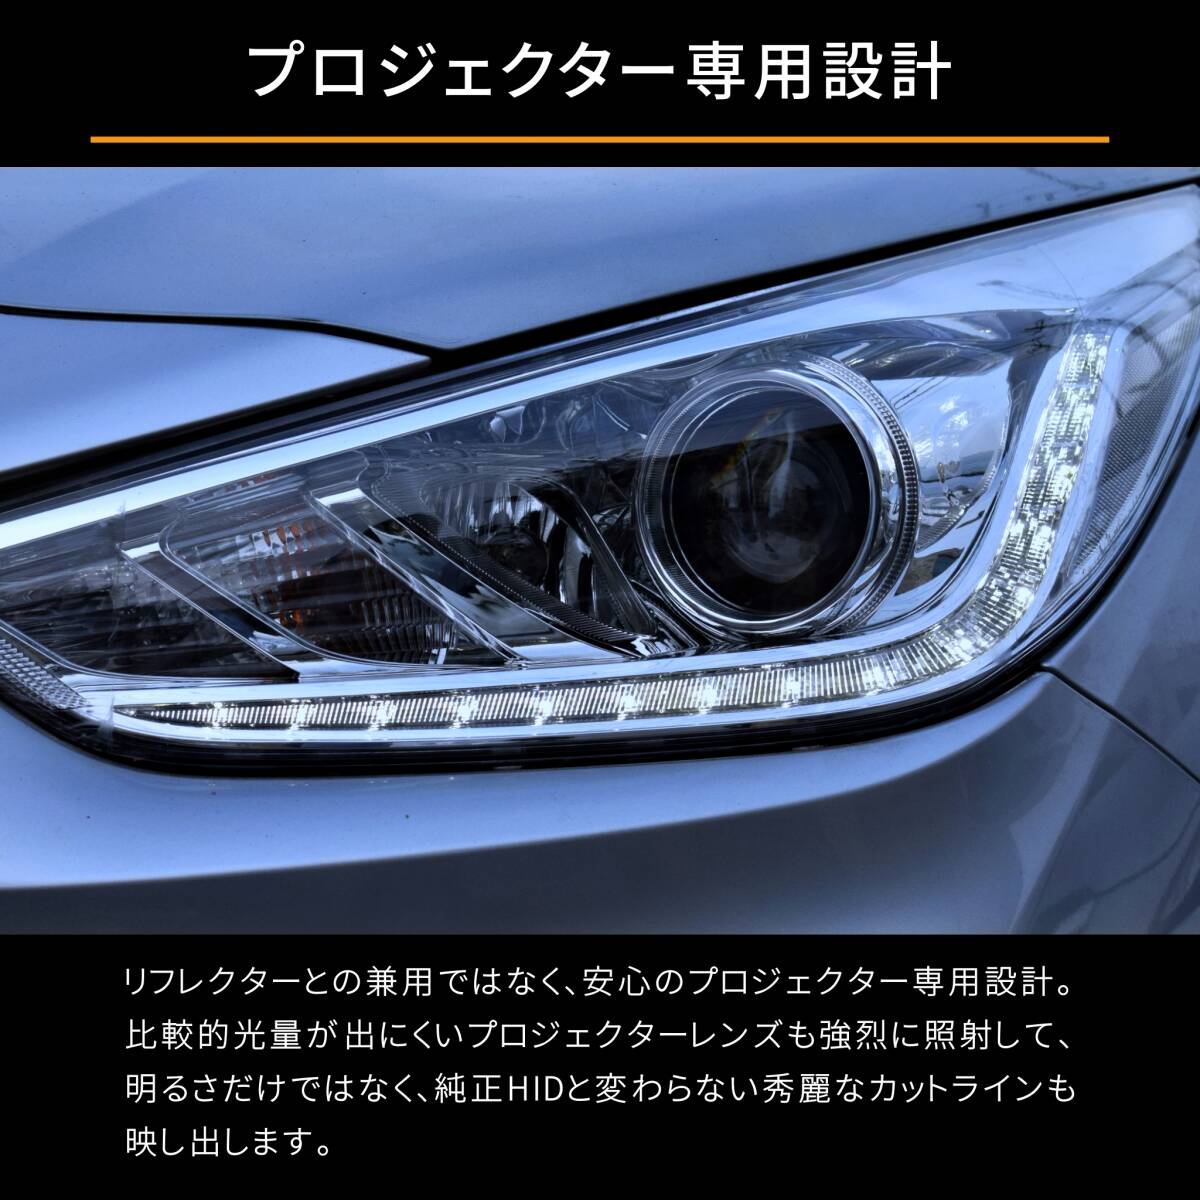 送料無料 1年保証 ホンダ CR-Z ZF2 前期 (H24.9-H27.7) 純正HID用 BrightRay D4S LED ヘッドライト 車検対応_画像4